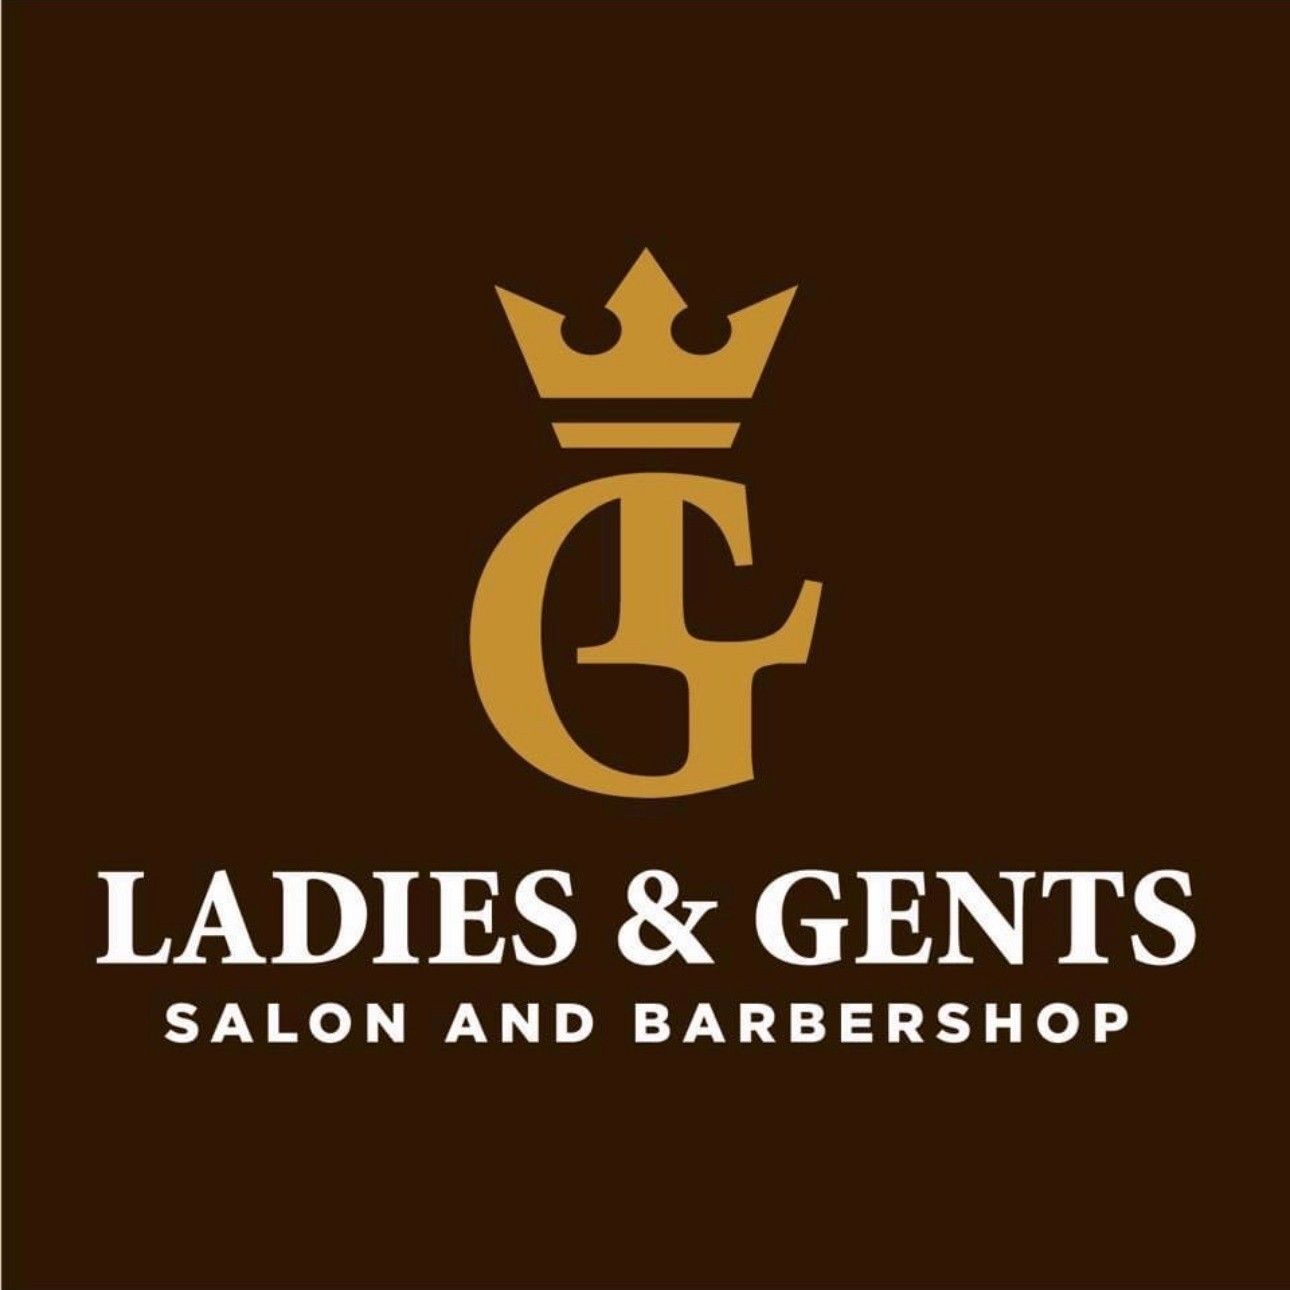 Ladies & Gents Salon and Barbershop, 224 Pleasant Street, Morgantown, 26505